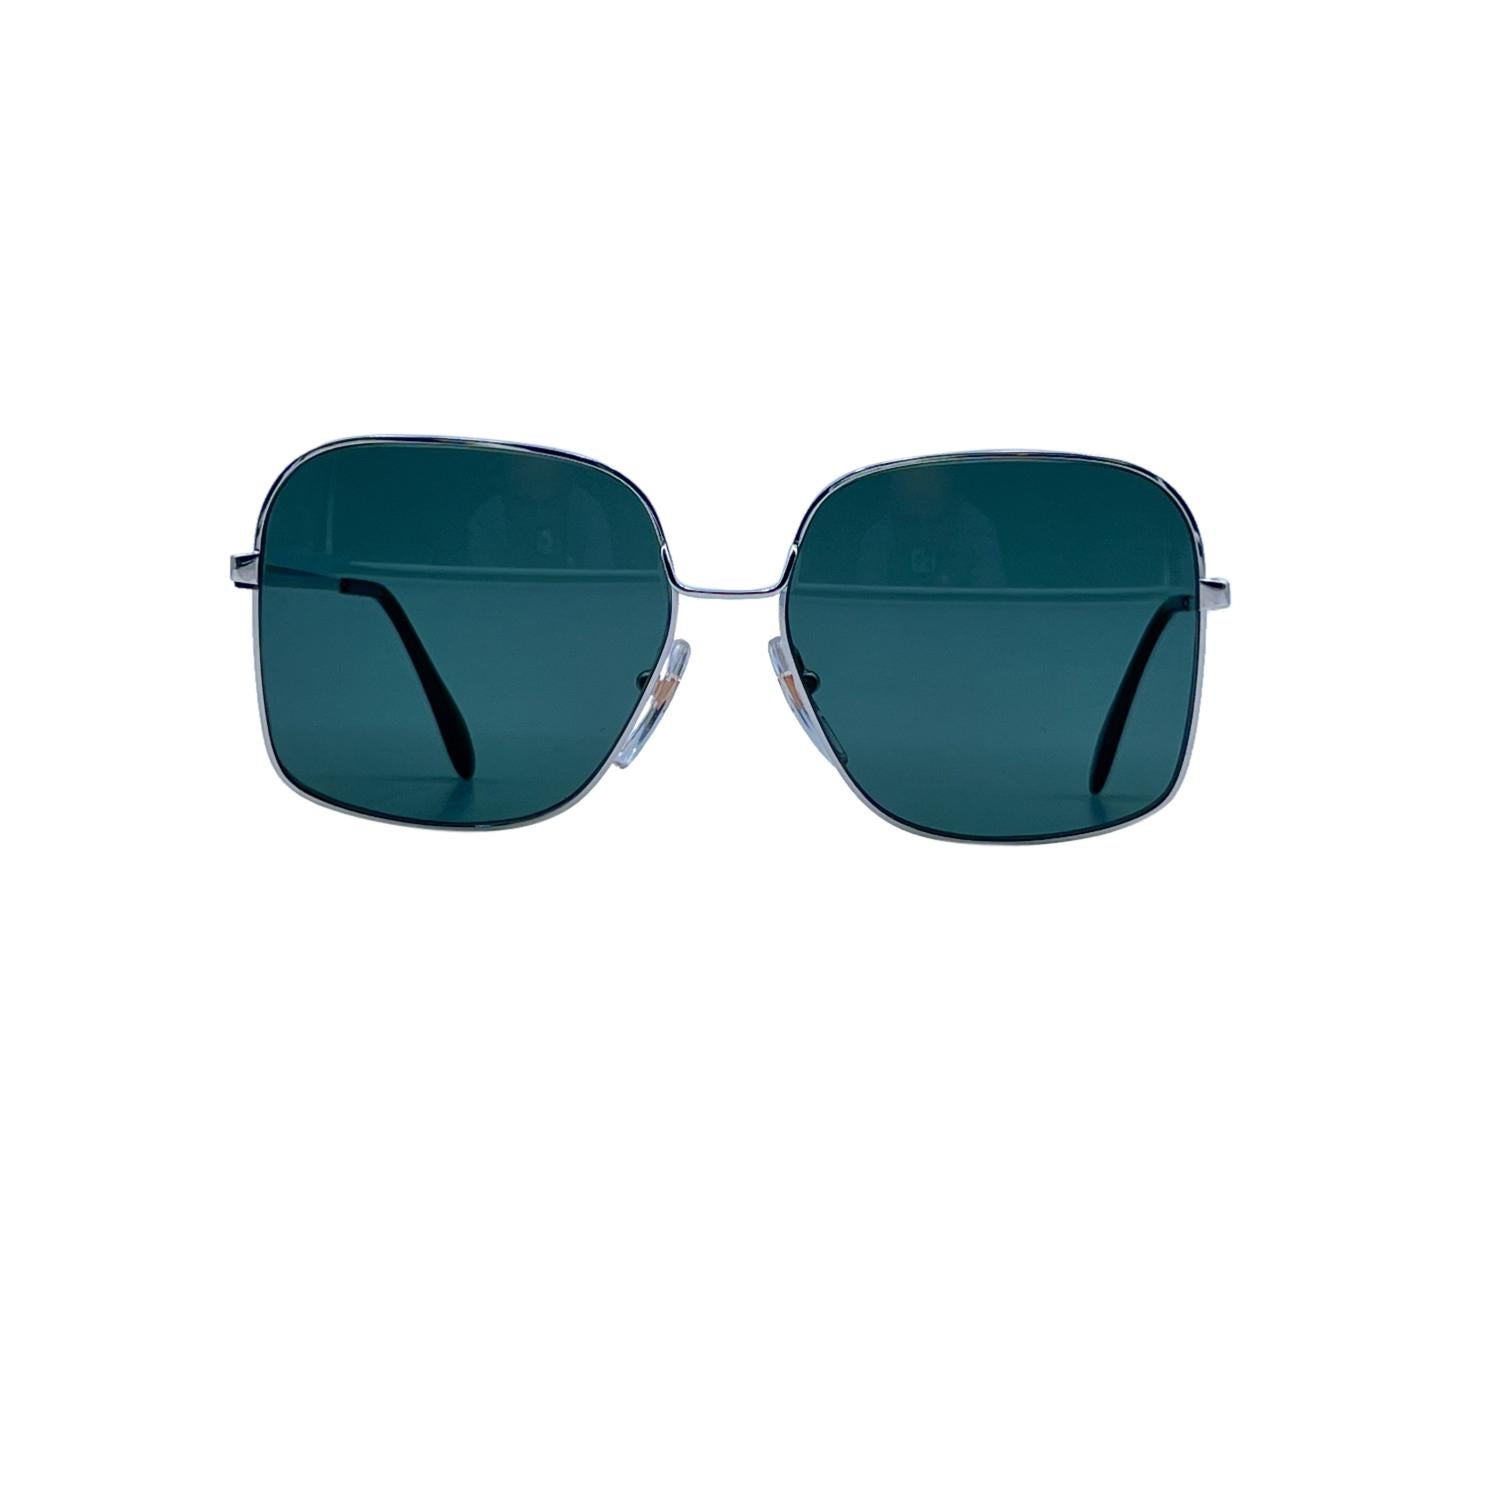 Blue Bausch & Lomb Vintage 70s Mint Unisex White Gold Sunglasses Mod. 520